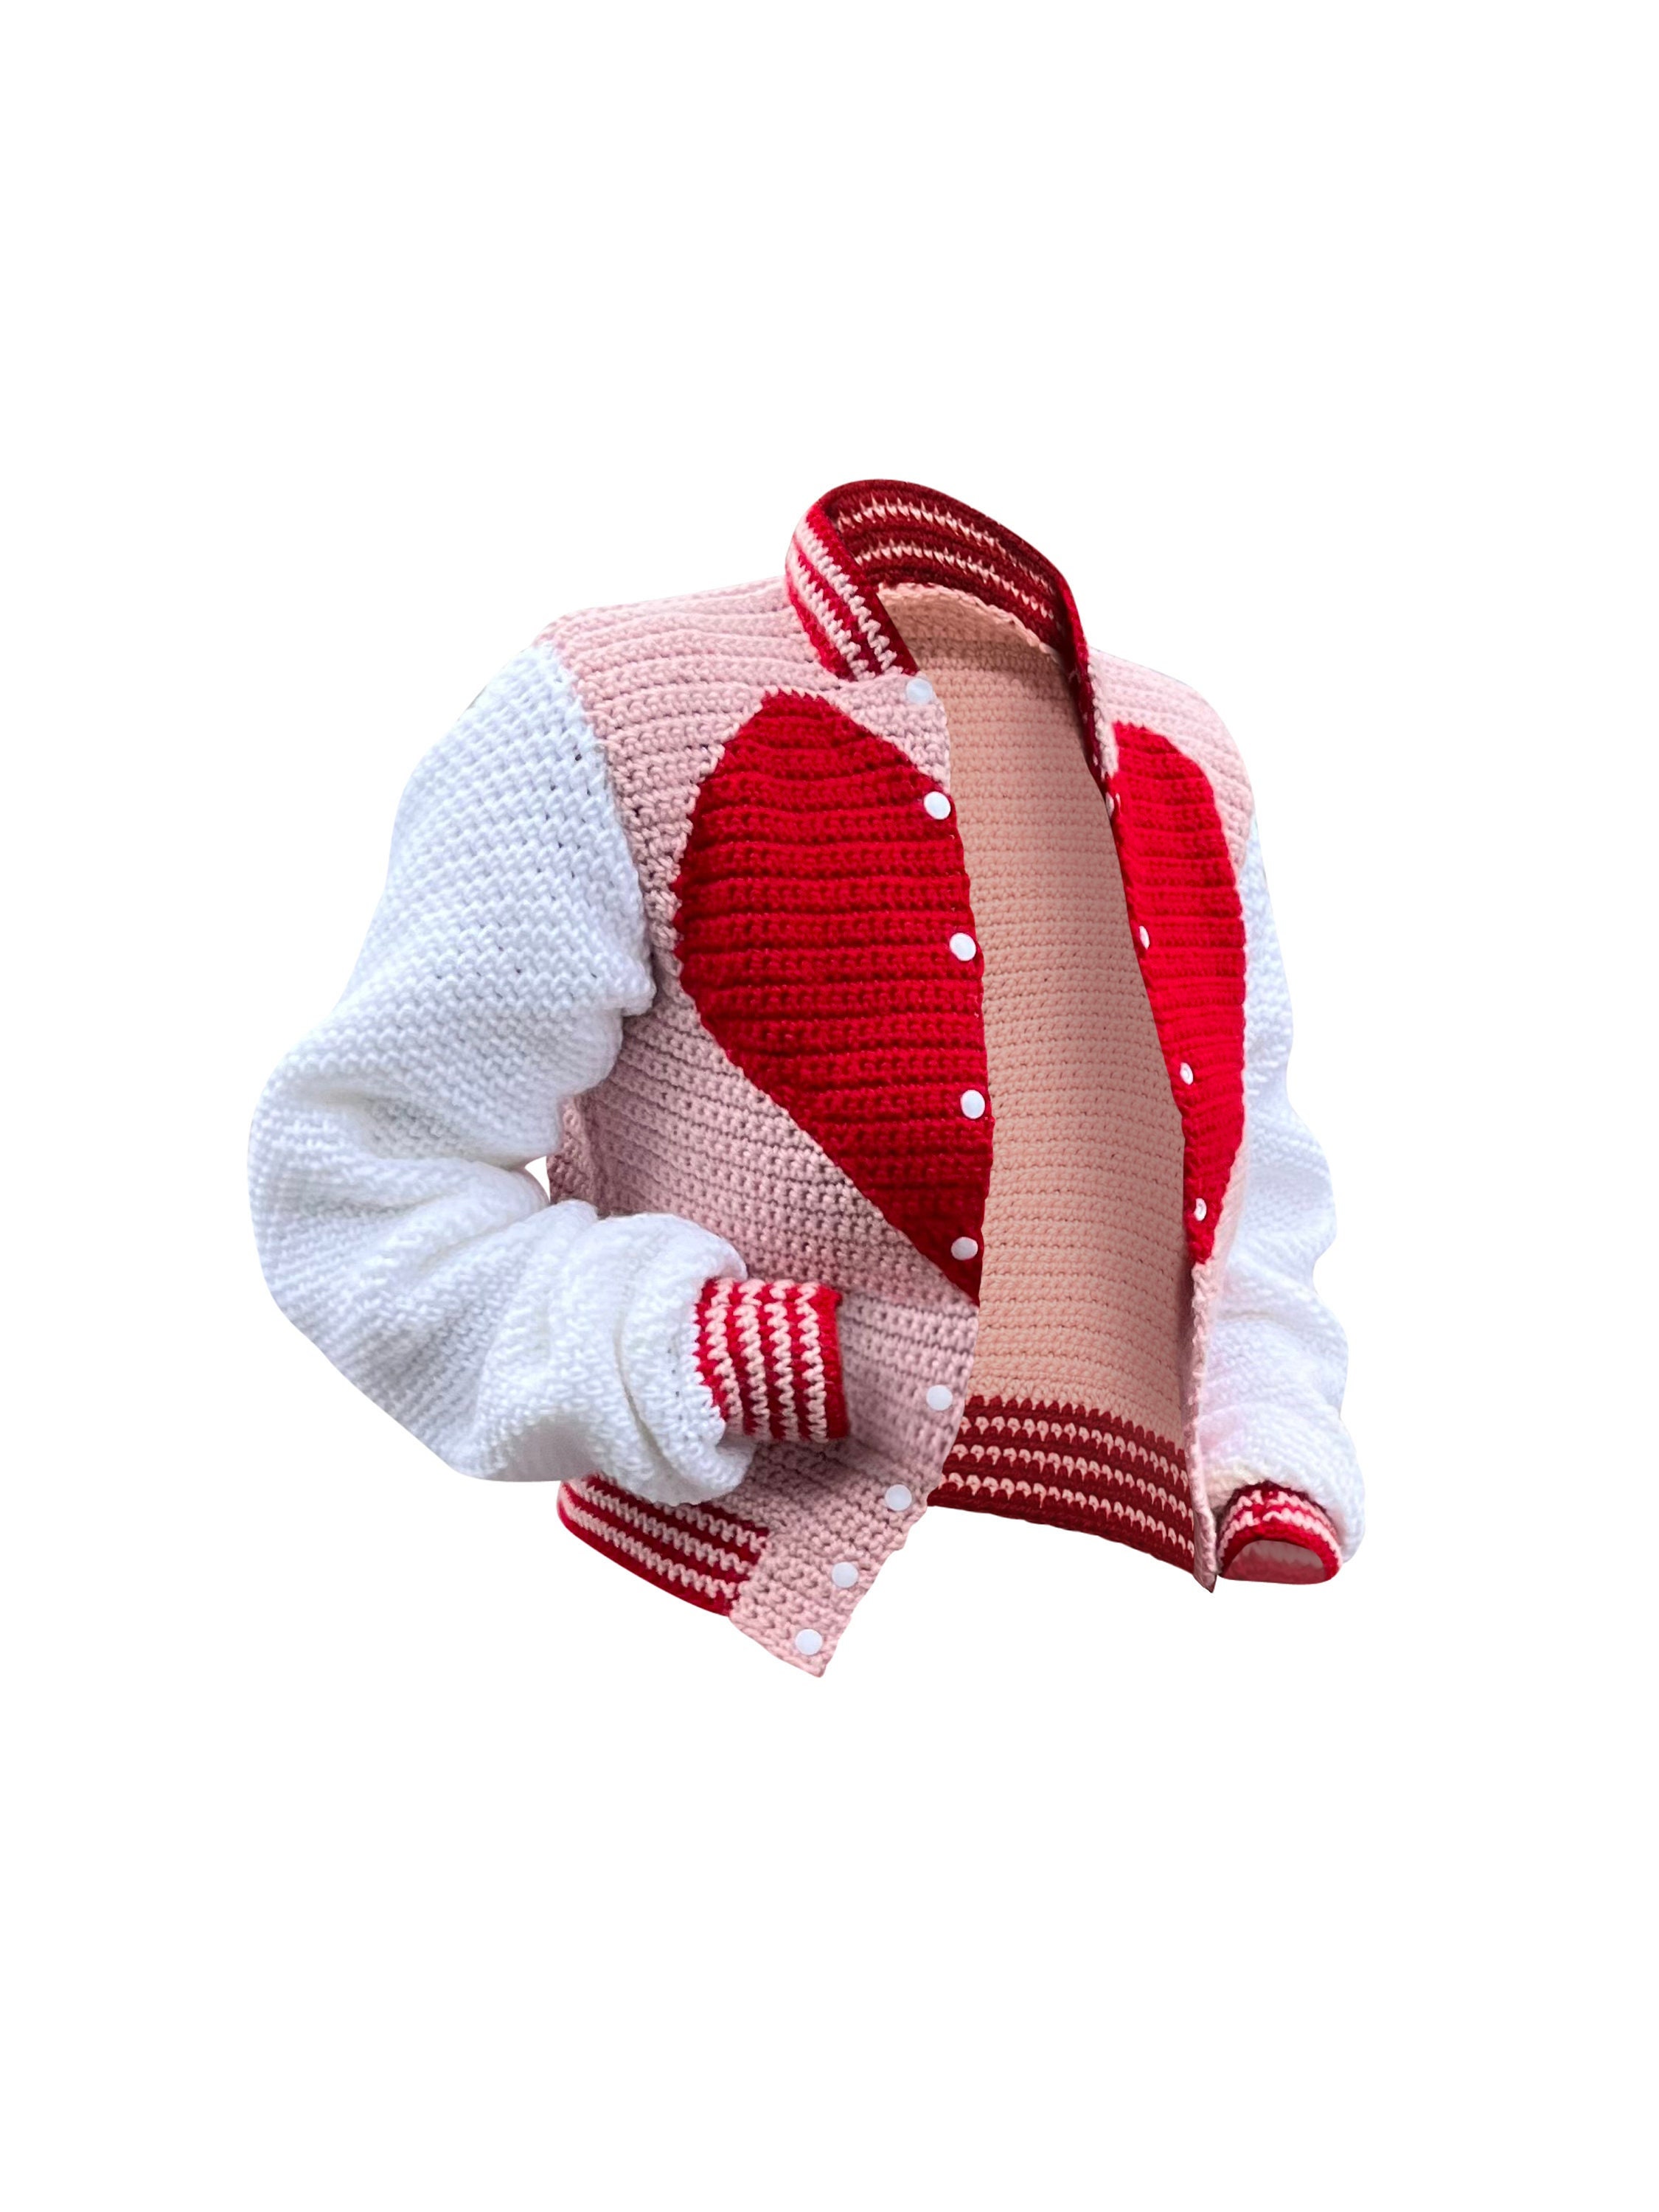 varsity jacket for amigurumi doll pattern/ patrón de chaqueta amigurumi/  Amitopia pattern